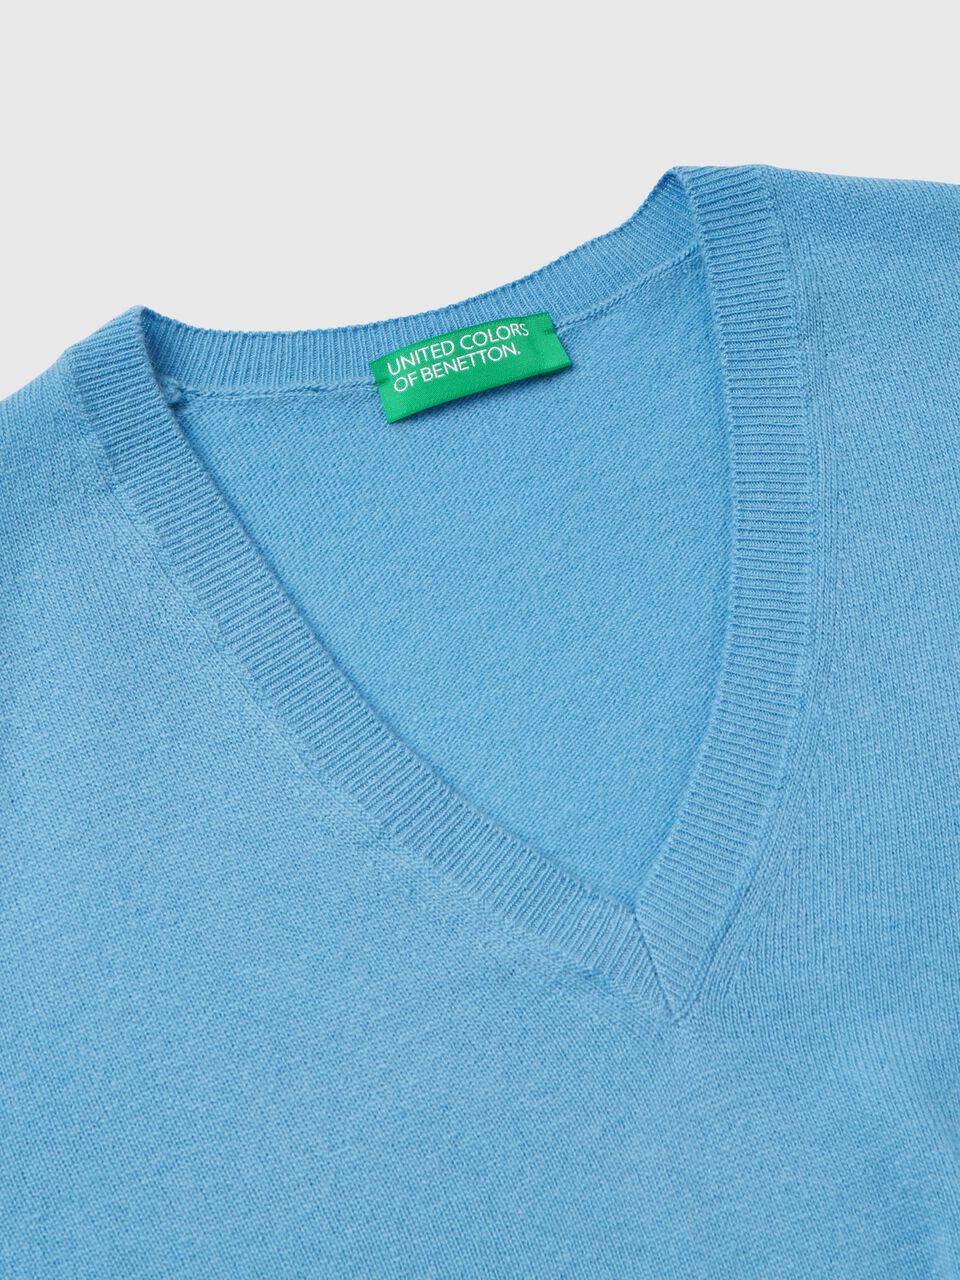 Pullover aus reiner Schurwolle in Hellblau mit V-Ausschnitt - Azurblau |  Benetton